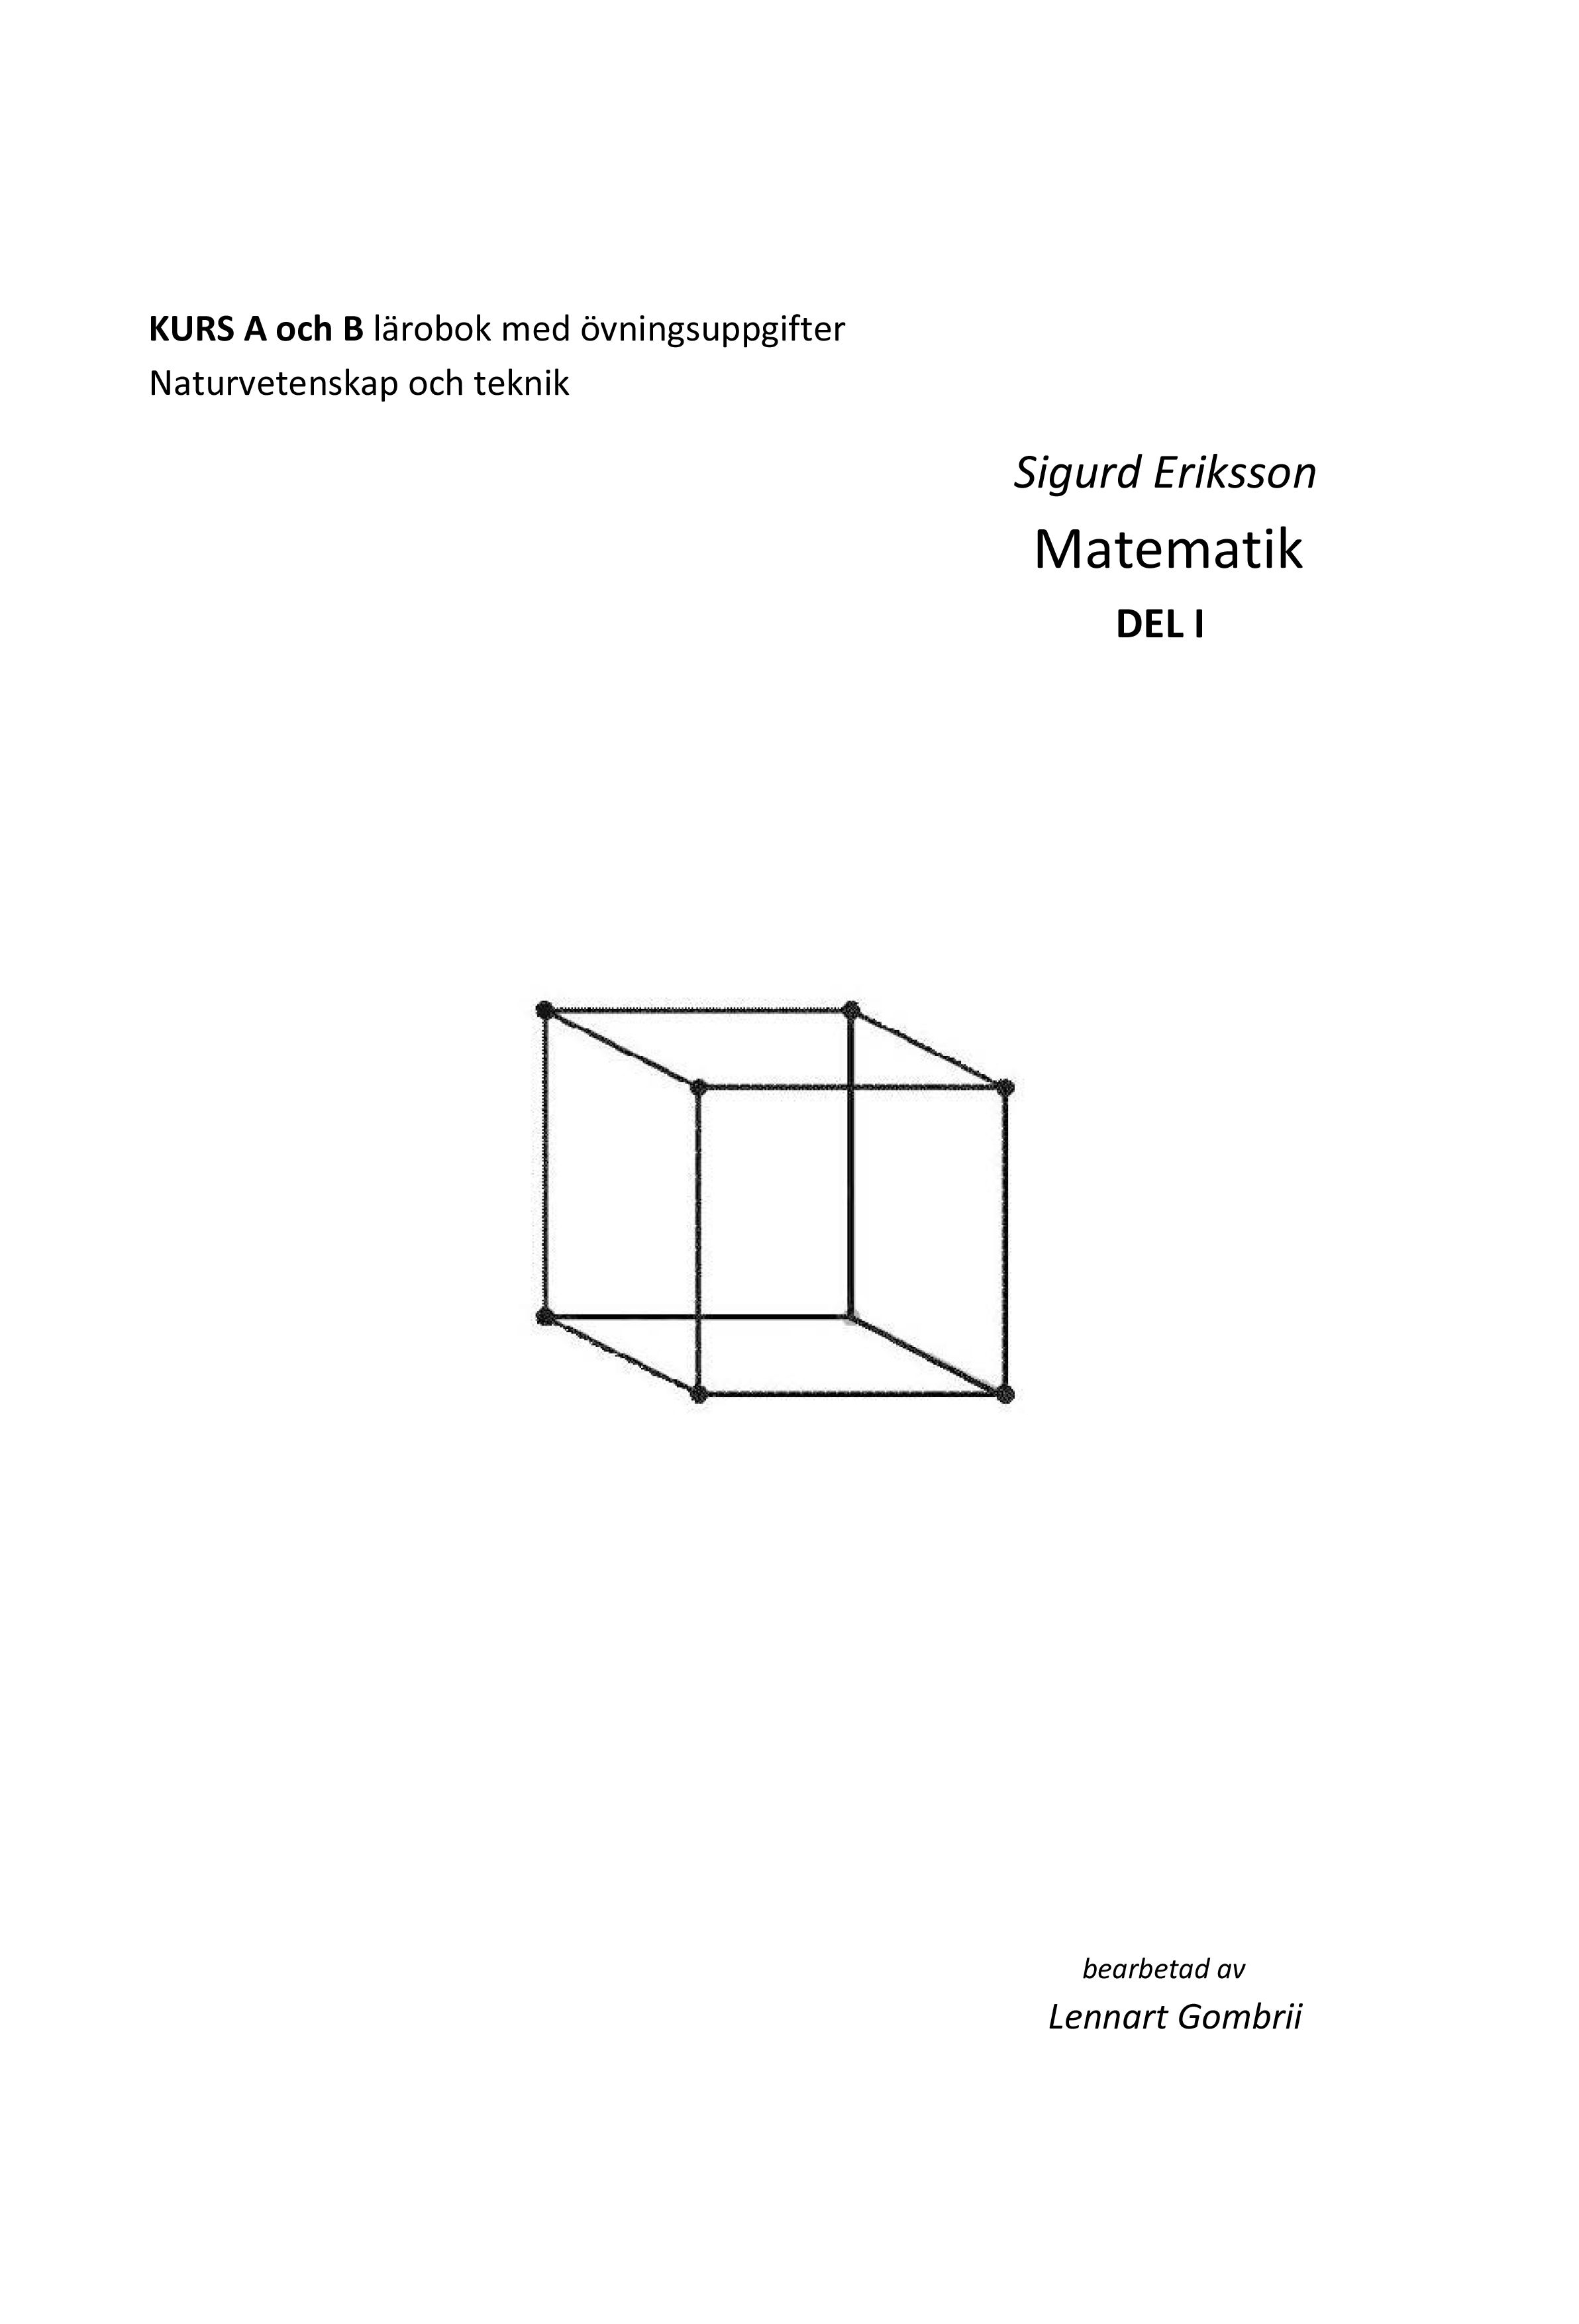 Sigurd Eriksson Matematik DEL I, e-bok av Lennart Gombrii